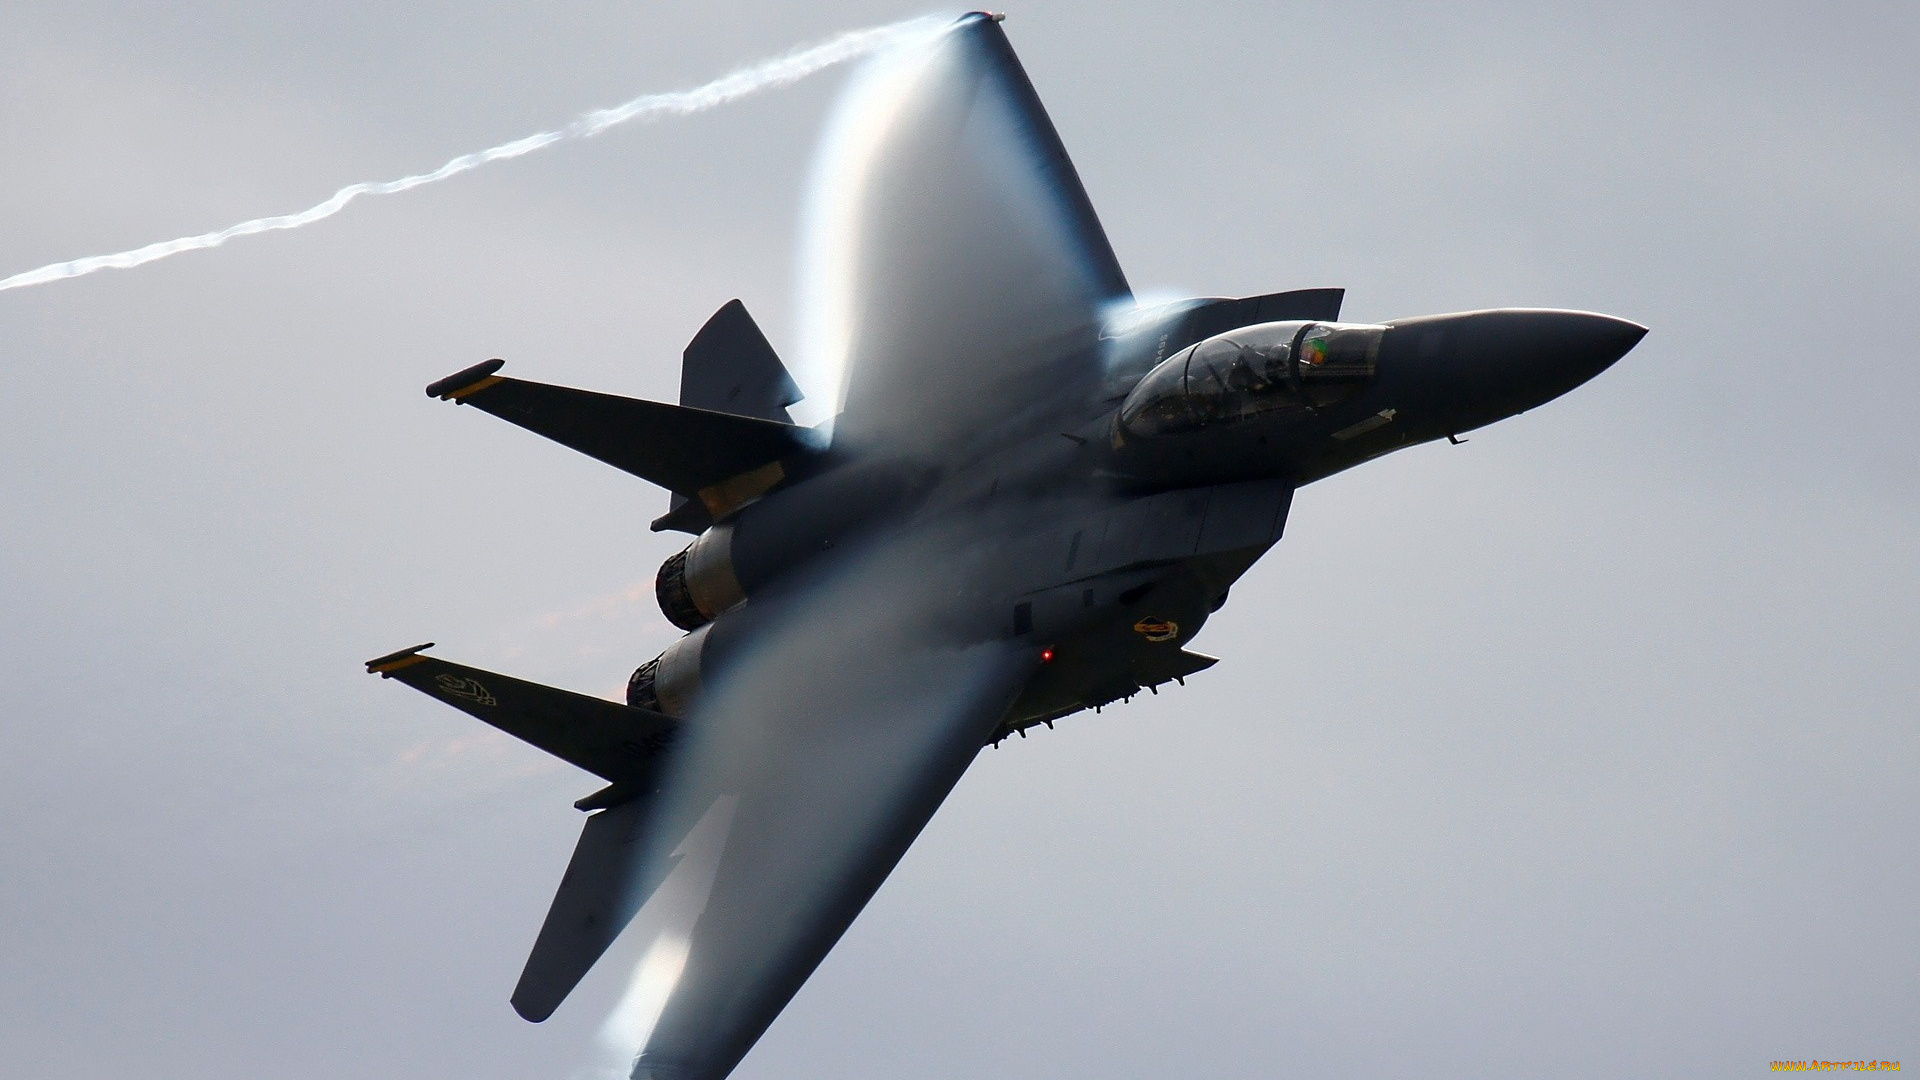 f-15, eagle, авиация, боевые, самолёты, полет, военная, airplane, wallhaven, истребитель, f-15, eagle